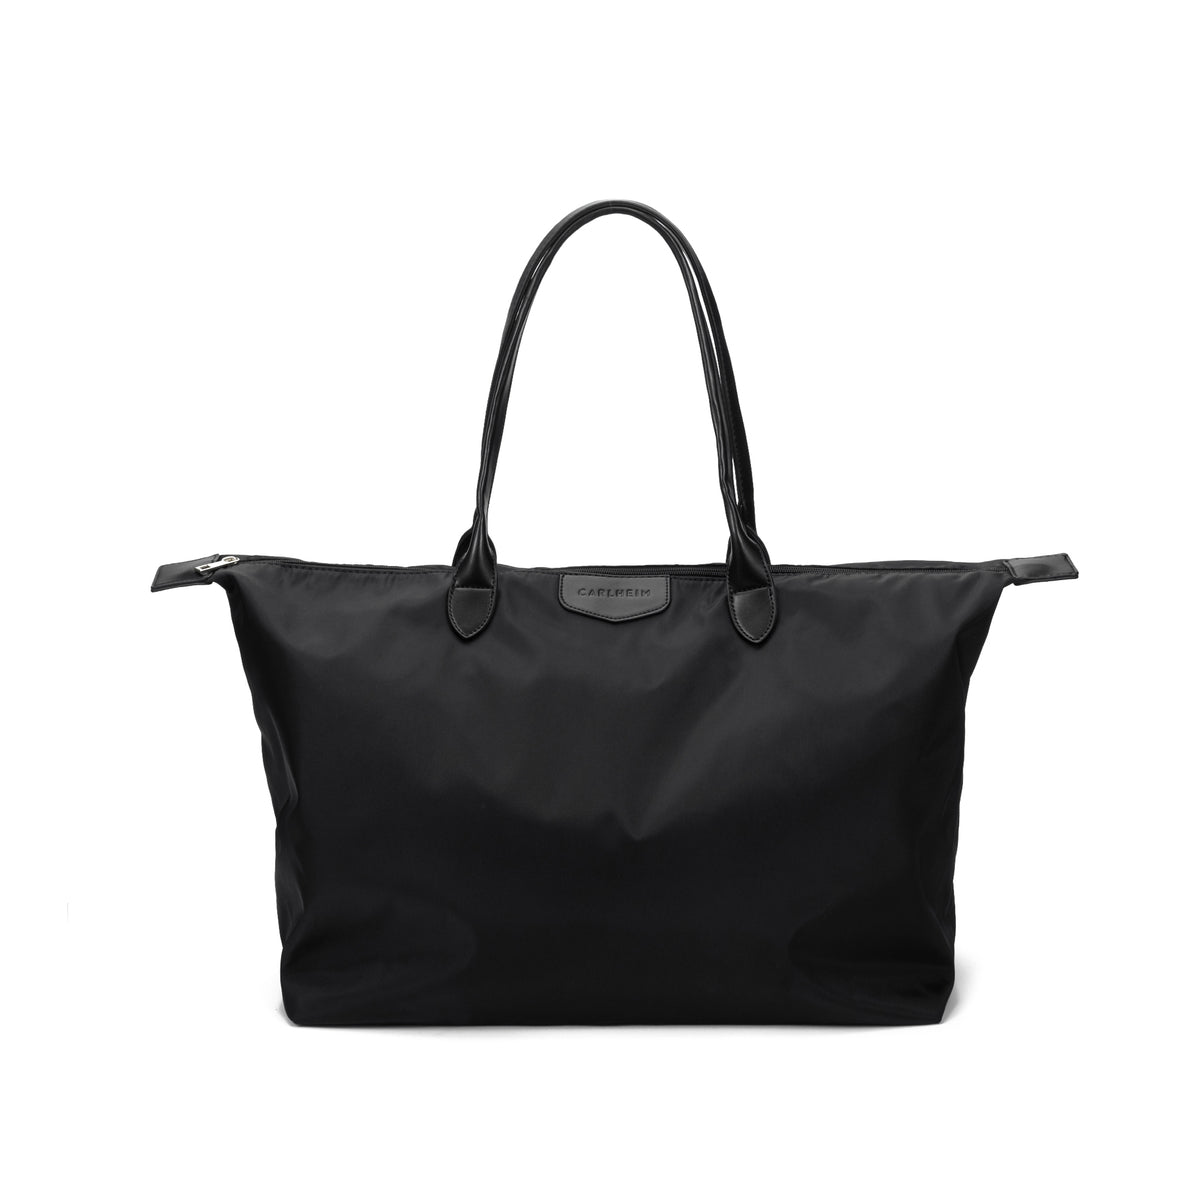 Unisex bags - Haven Weekendbag - Nylon (Black) - Carlheim